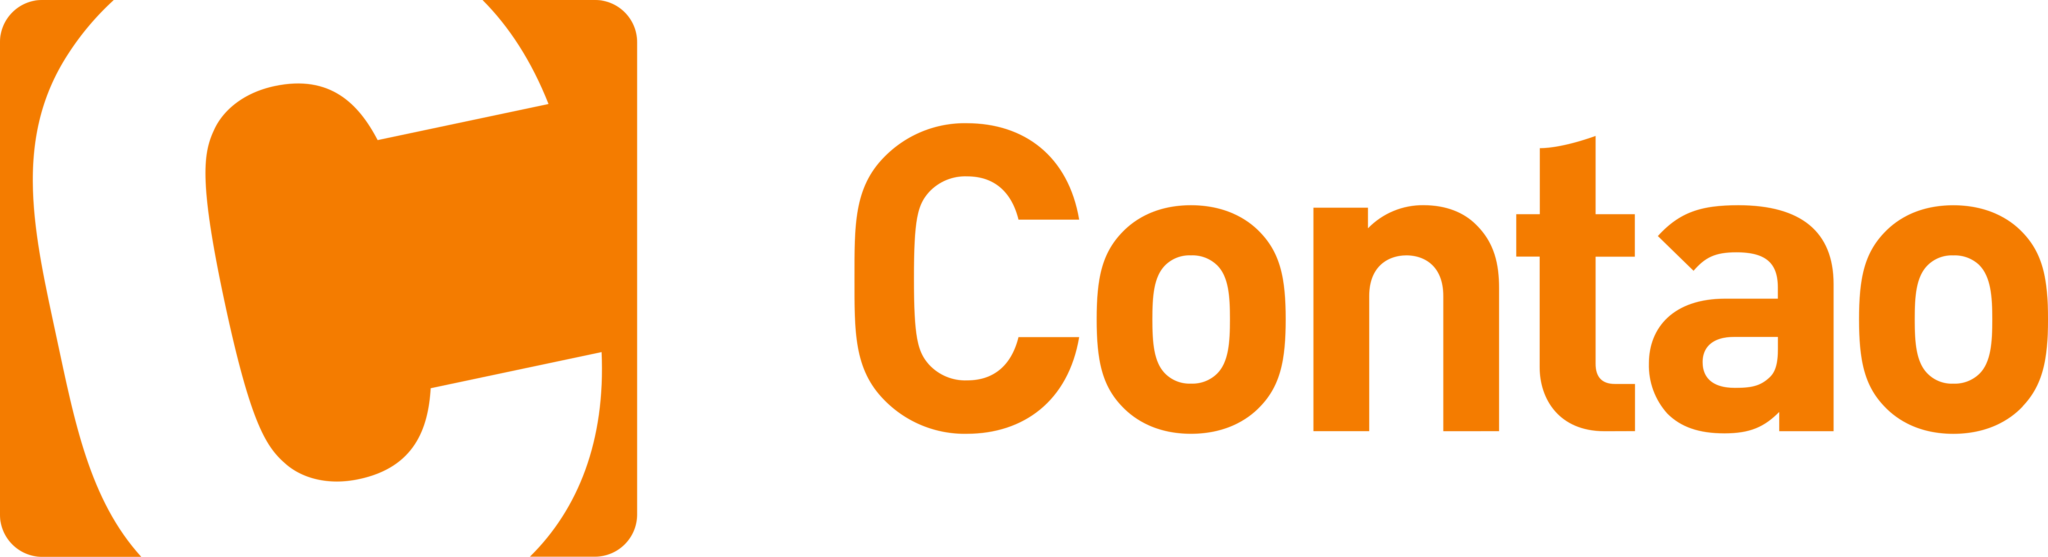 Сайт im. Cm логотип. Cms логотип значок. Лого cms 2018 на прозрачном фоне. Plario логотип.